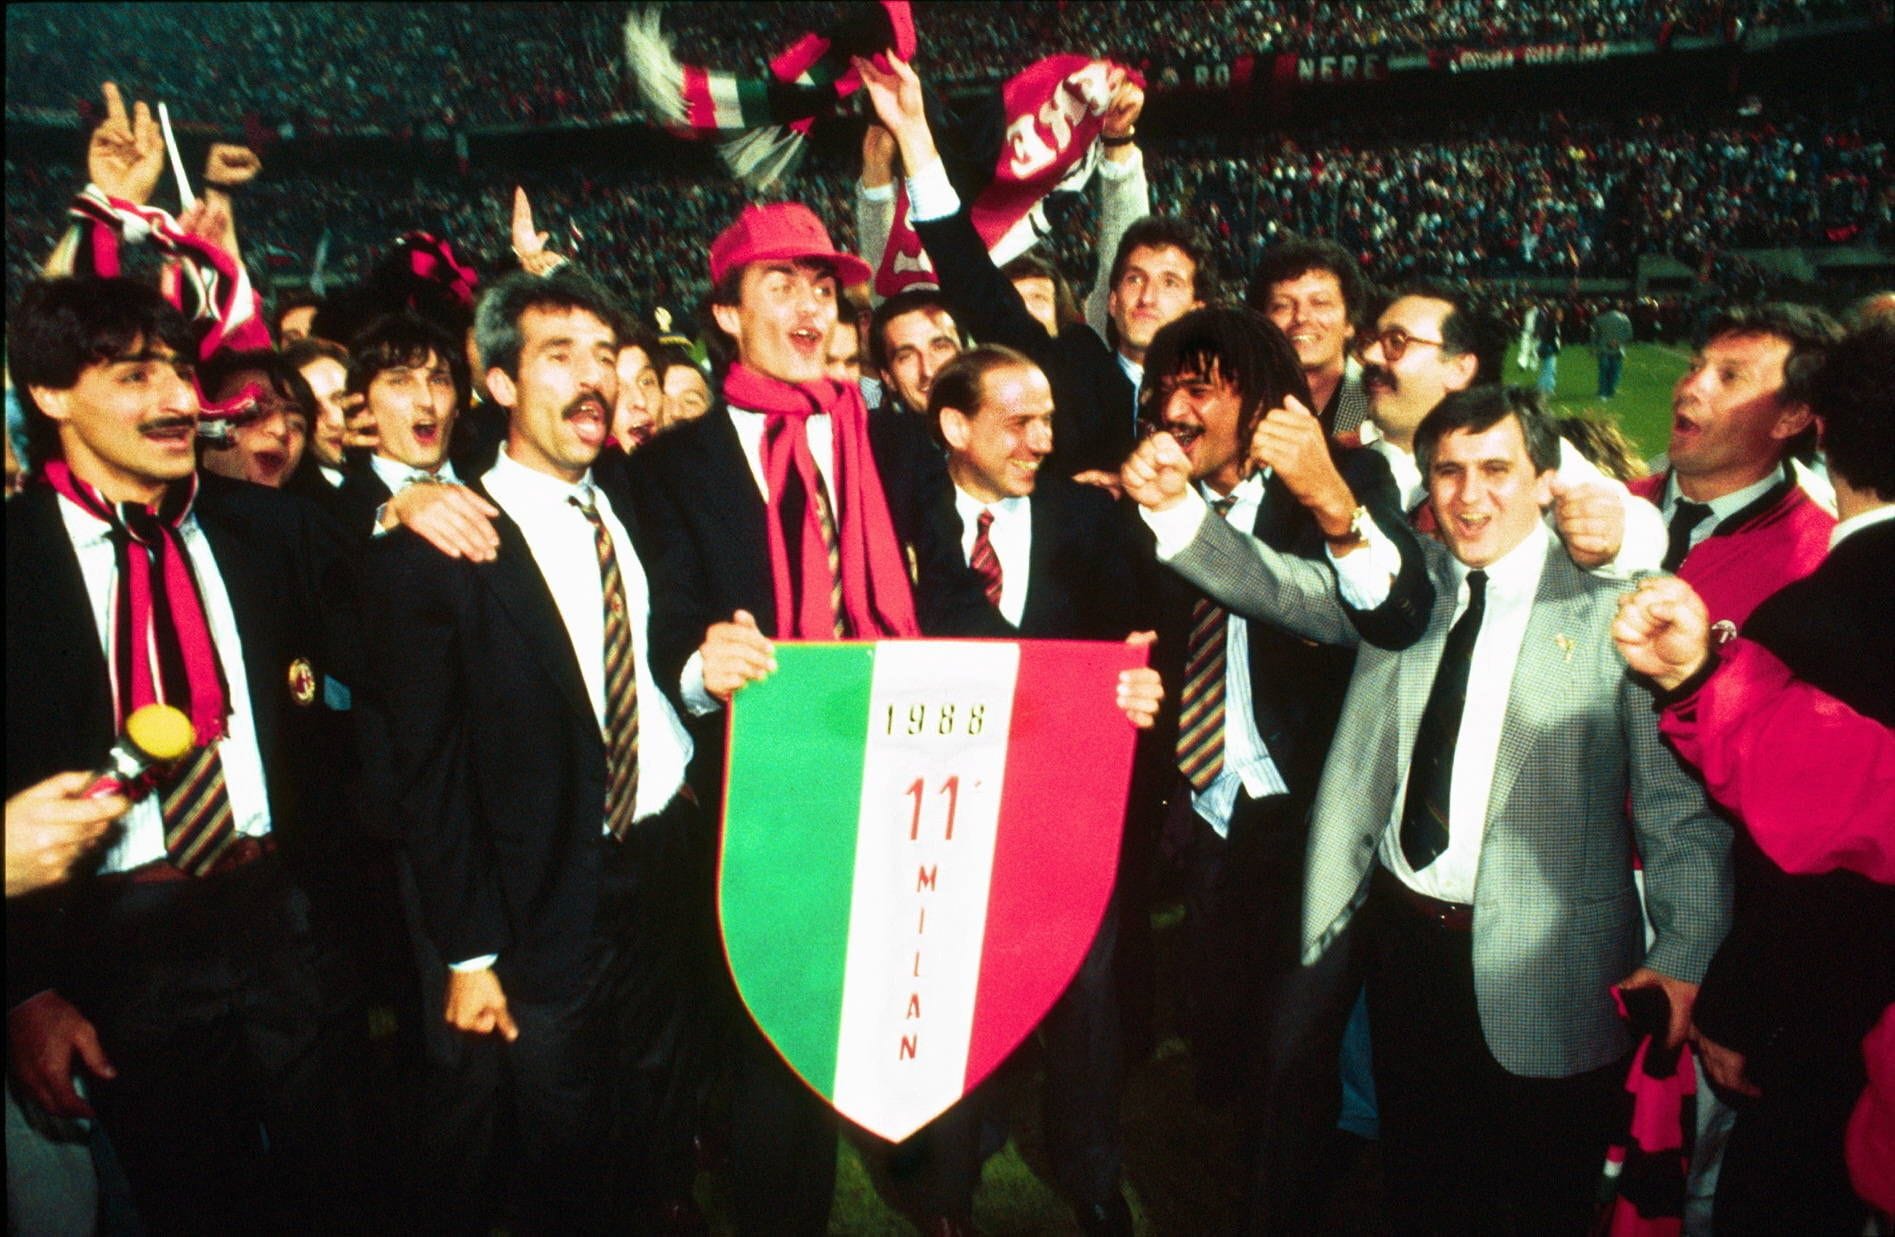 Der gebürtige Mailänder war seit 1986 viele Jahre Präsident des Fußballvereins AC Mailand. Auch da bewies er, dass er große Inszenierungen genoss. Zu seinem Club-Amtsantritt flog er im Helikopter zu Wagners "Walkürenritt" ins Stadion.